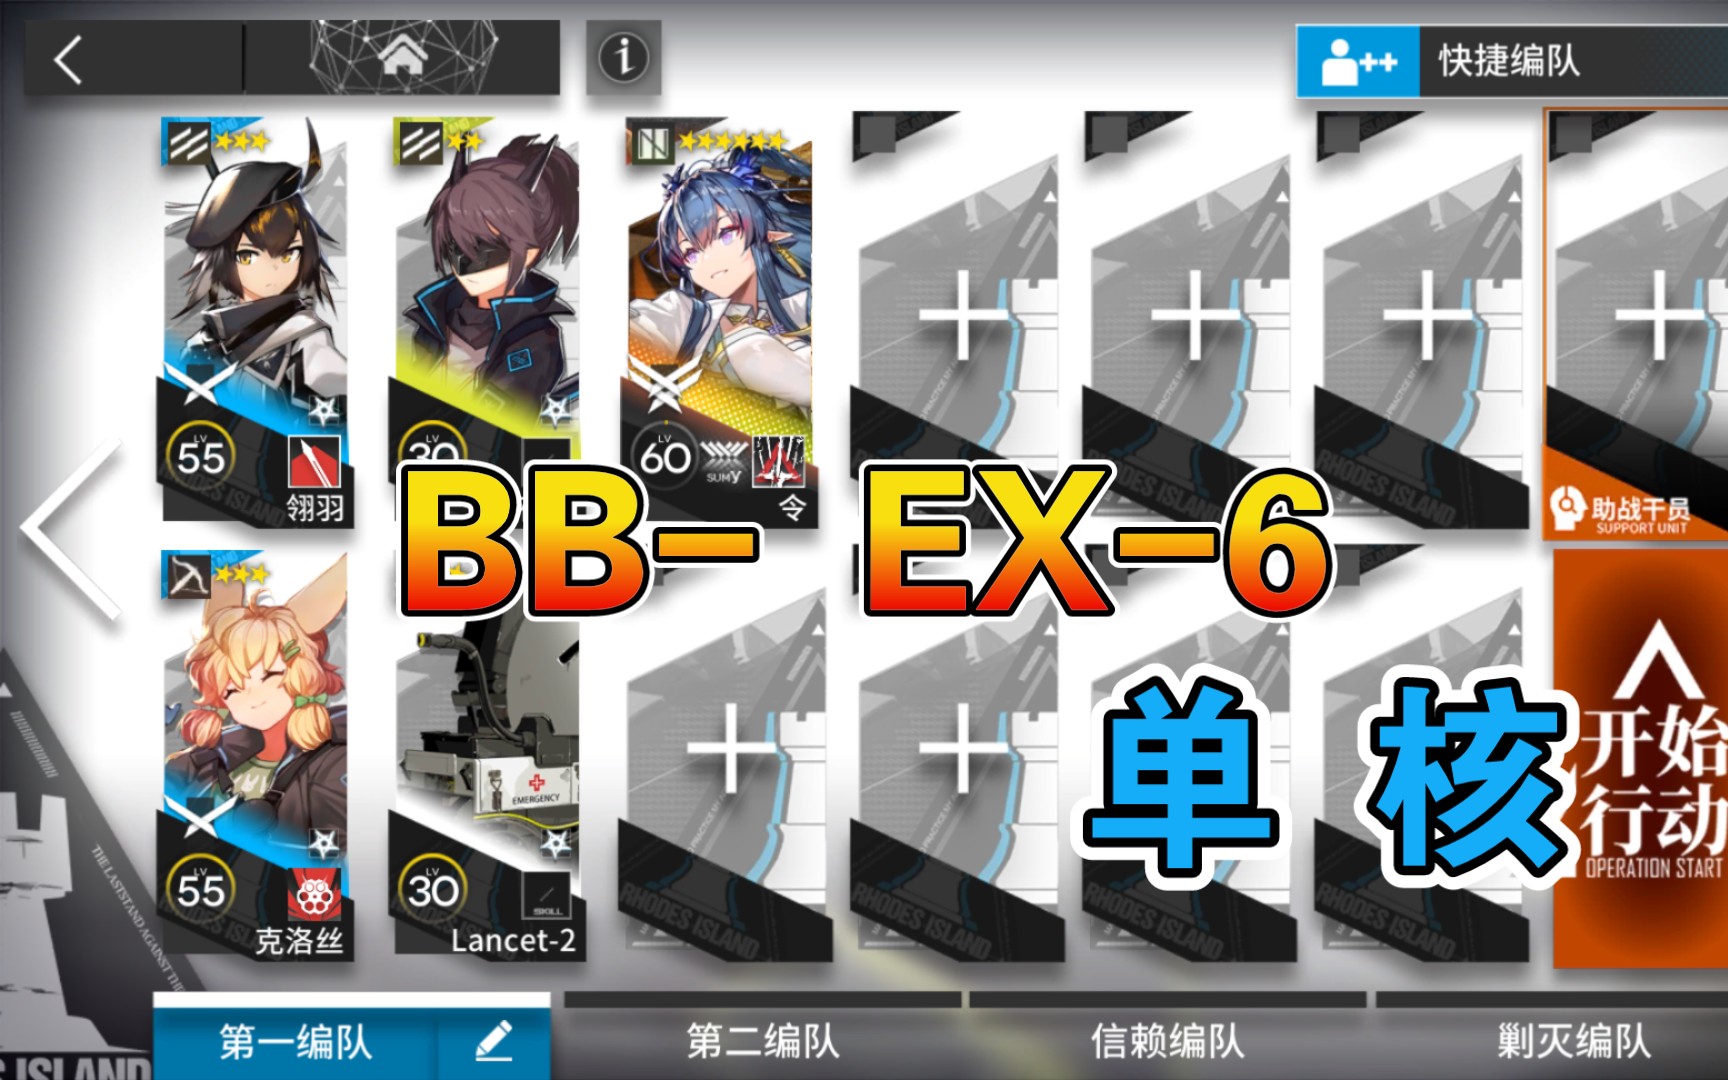 【明日方舟】 BB-EX-6 低配 单核令 巴别塔